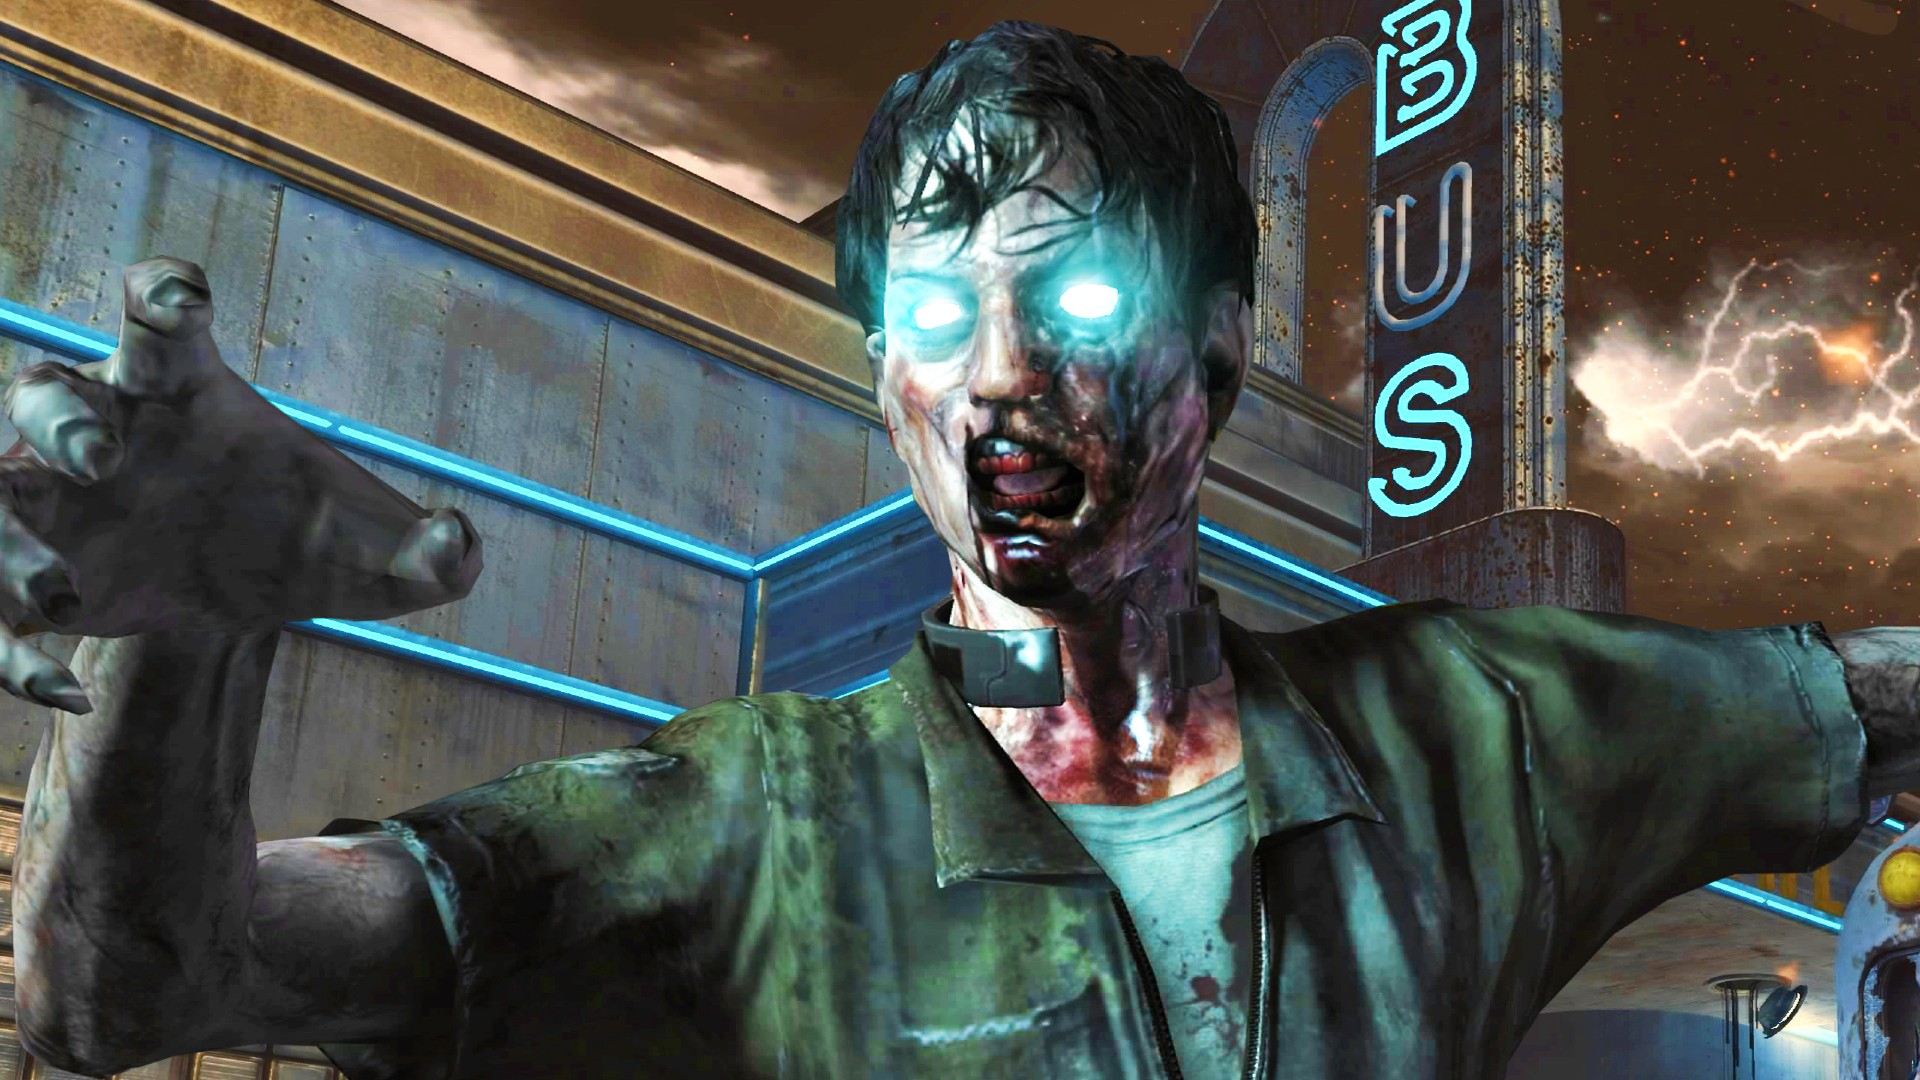 Black Ops 2 Zombies est de retour avec de nouvelles cartes et modes, grâce au mod CoD